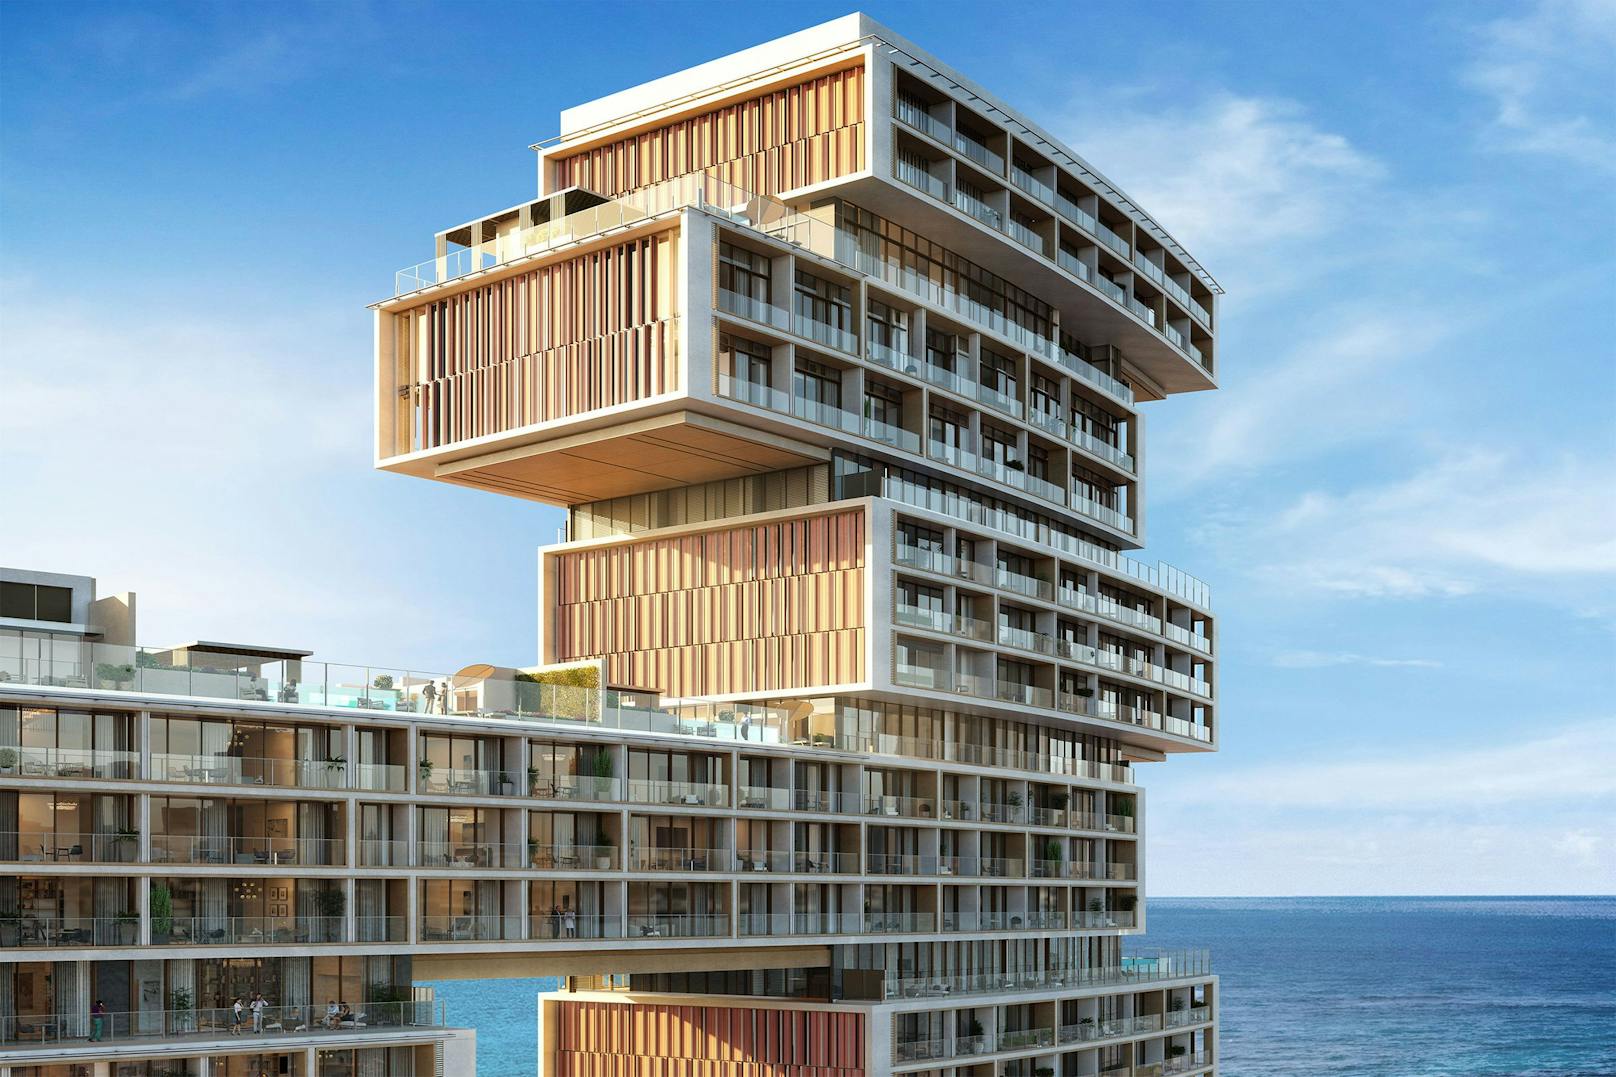 Das&nbsp;Luxus-Penthouse befindet sich unglaubliche 150 Meter über dem Meeresspiegel.